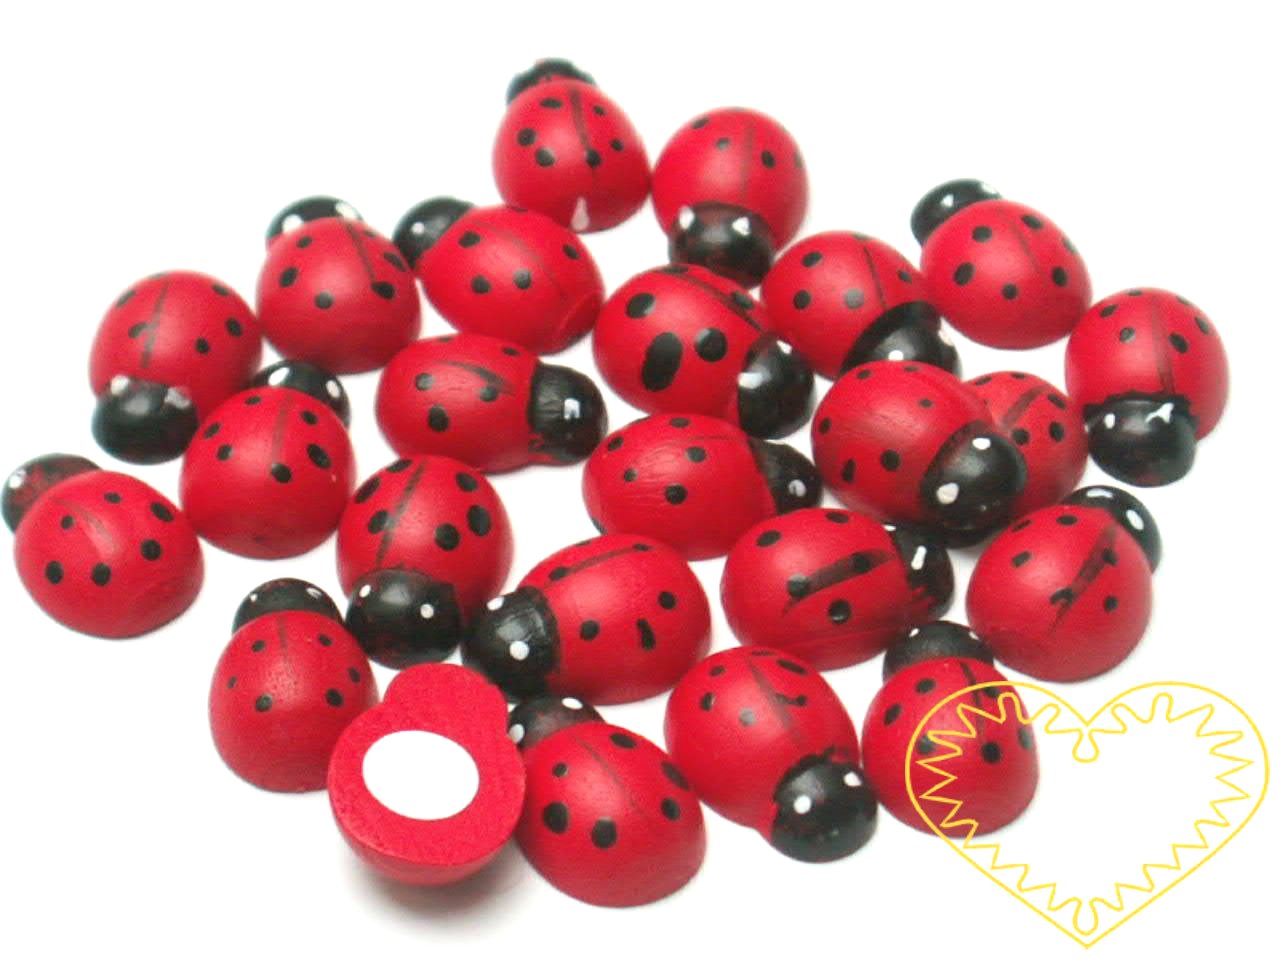 Červené dřevěné berušky velikosti 1,8 cm, s černými hlavičkami a puntíky. Na spodní straně mají samolep, takže je snadno můžete přilepit, kam potřebujete. Berušky lze využít k aranžování, k výrobě dekorací a šperků.